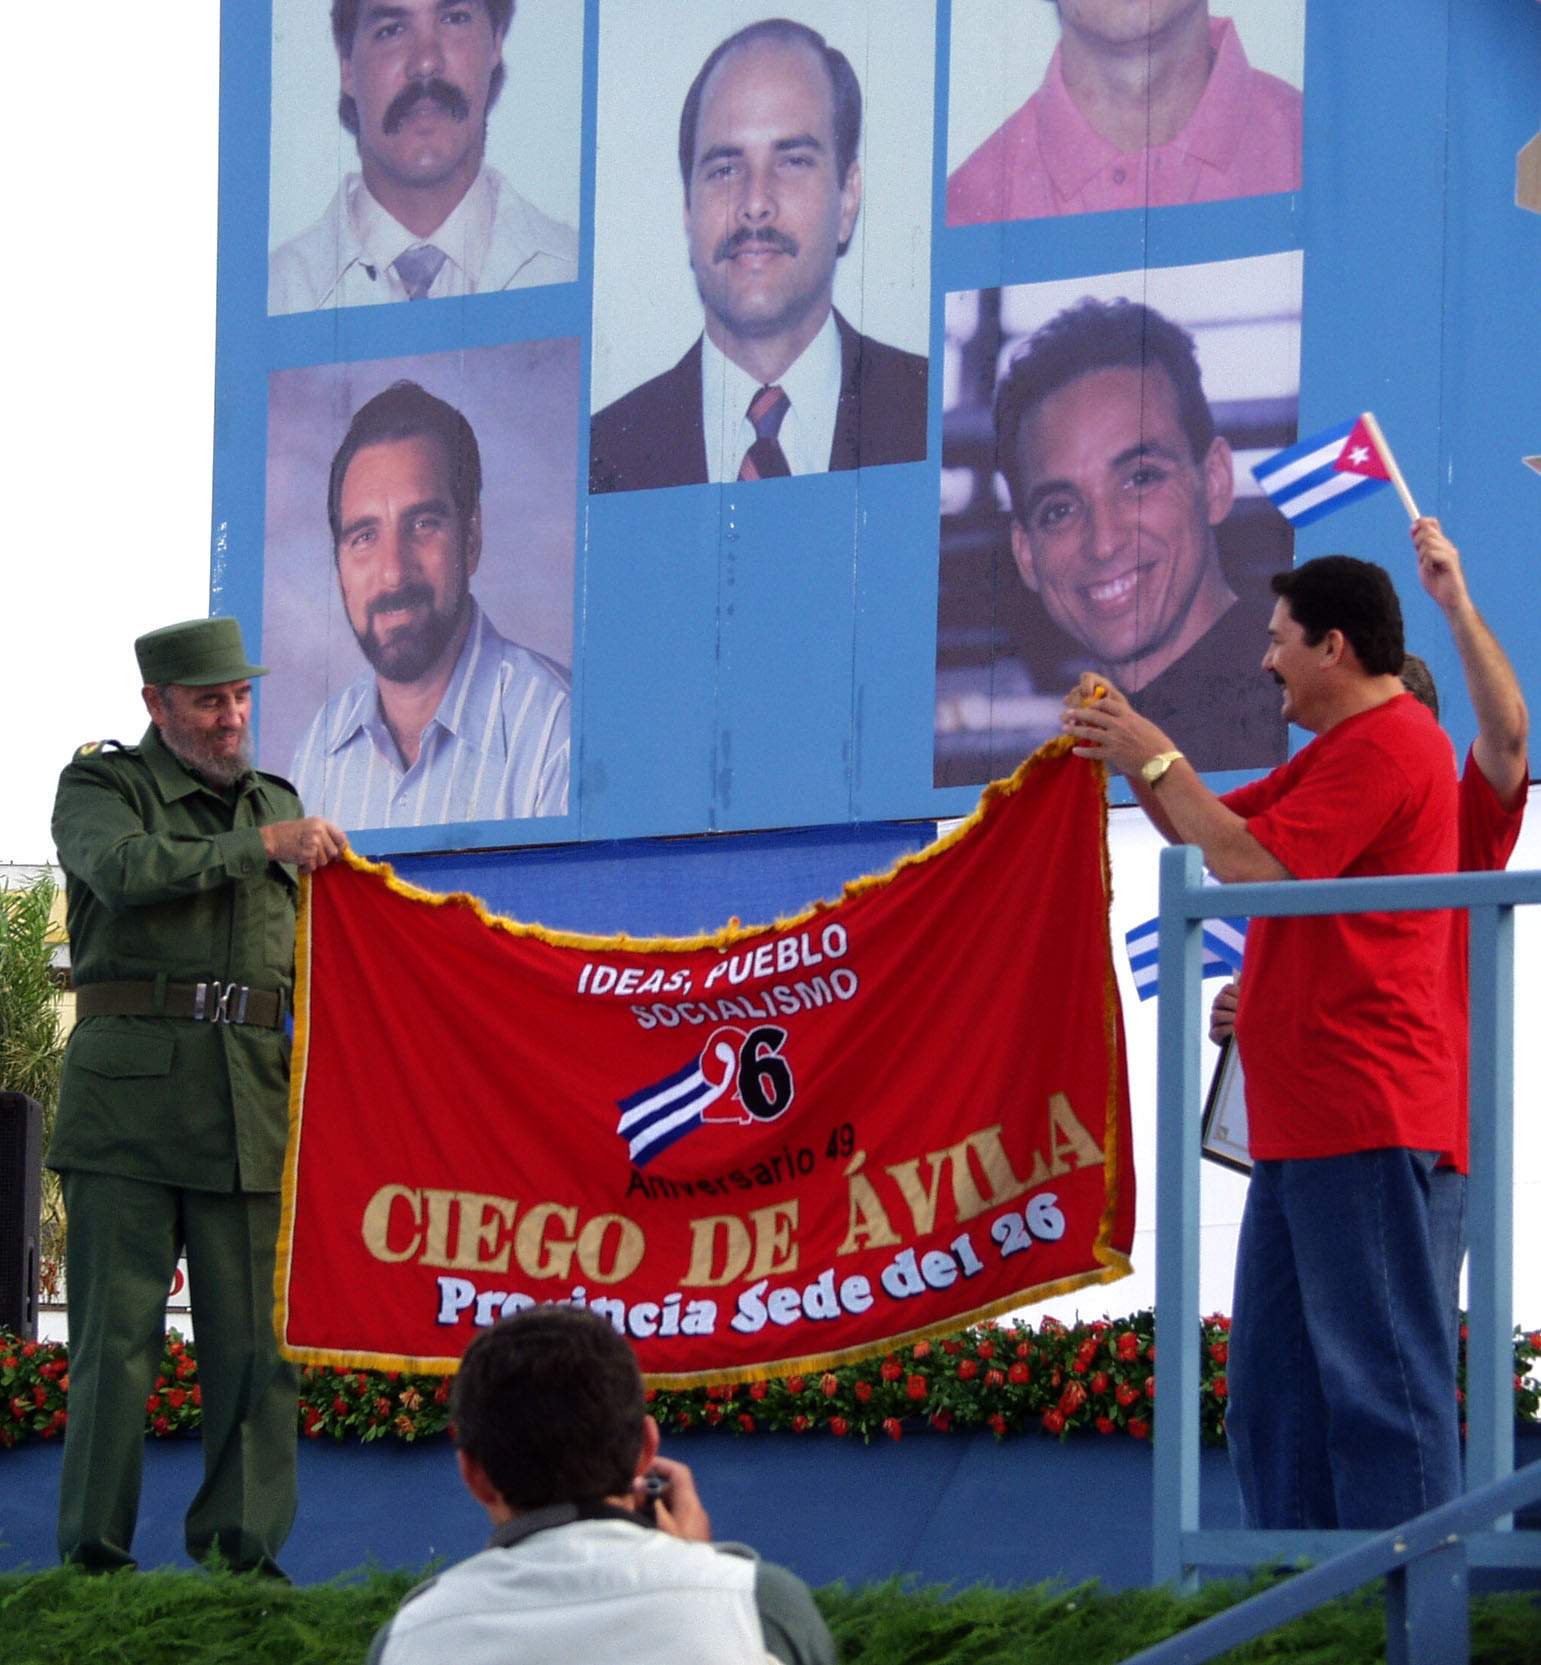 Fidel in Ciego de Ávila on july 26th, 2002